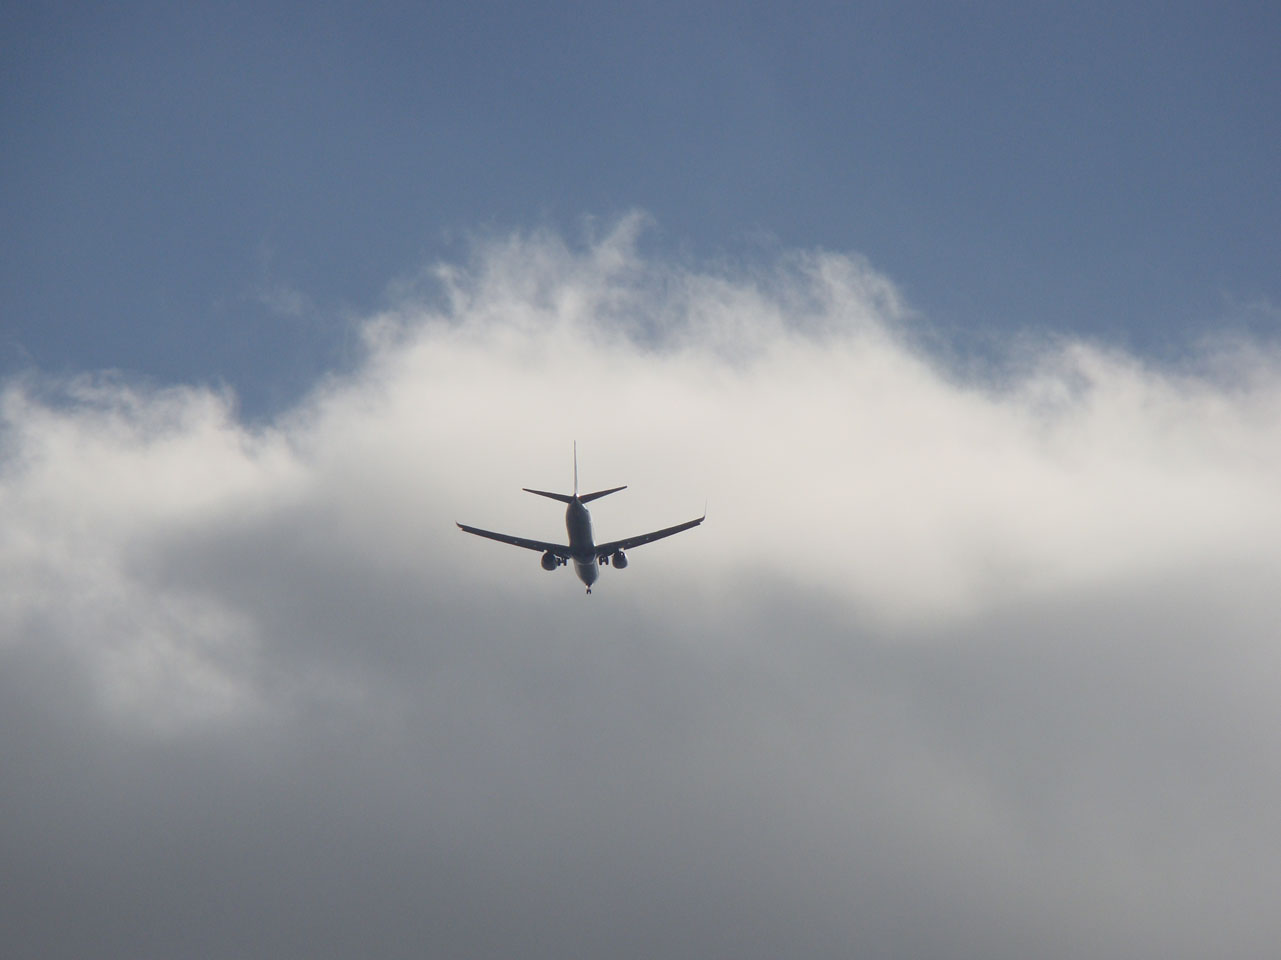 Un "petit avion" en approche sur Bâle-Mulhouse... on comprend pourquoi le survol de l'aérodrome est limité à 1000 ft !